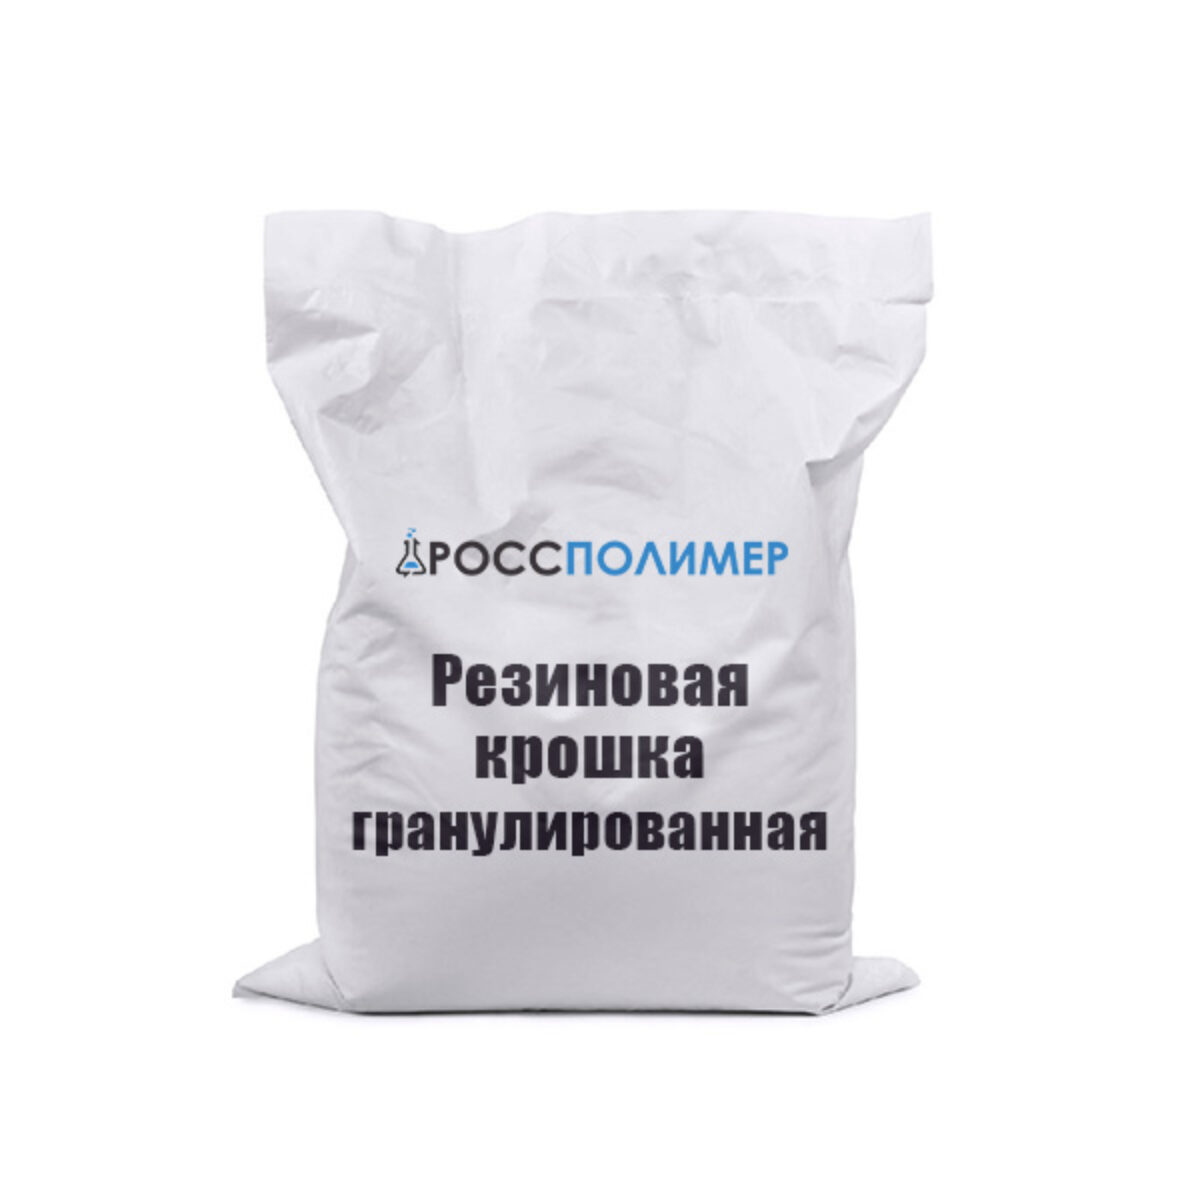 Резиновая крошка гранулированная купить по цене производителя ☛ Доставка по  России РоссПолимер